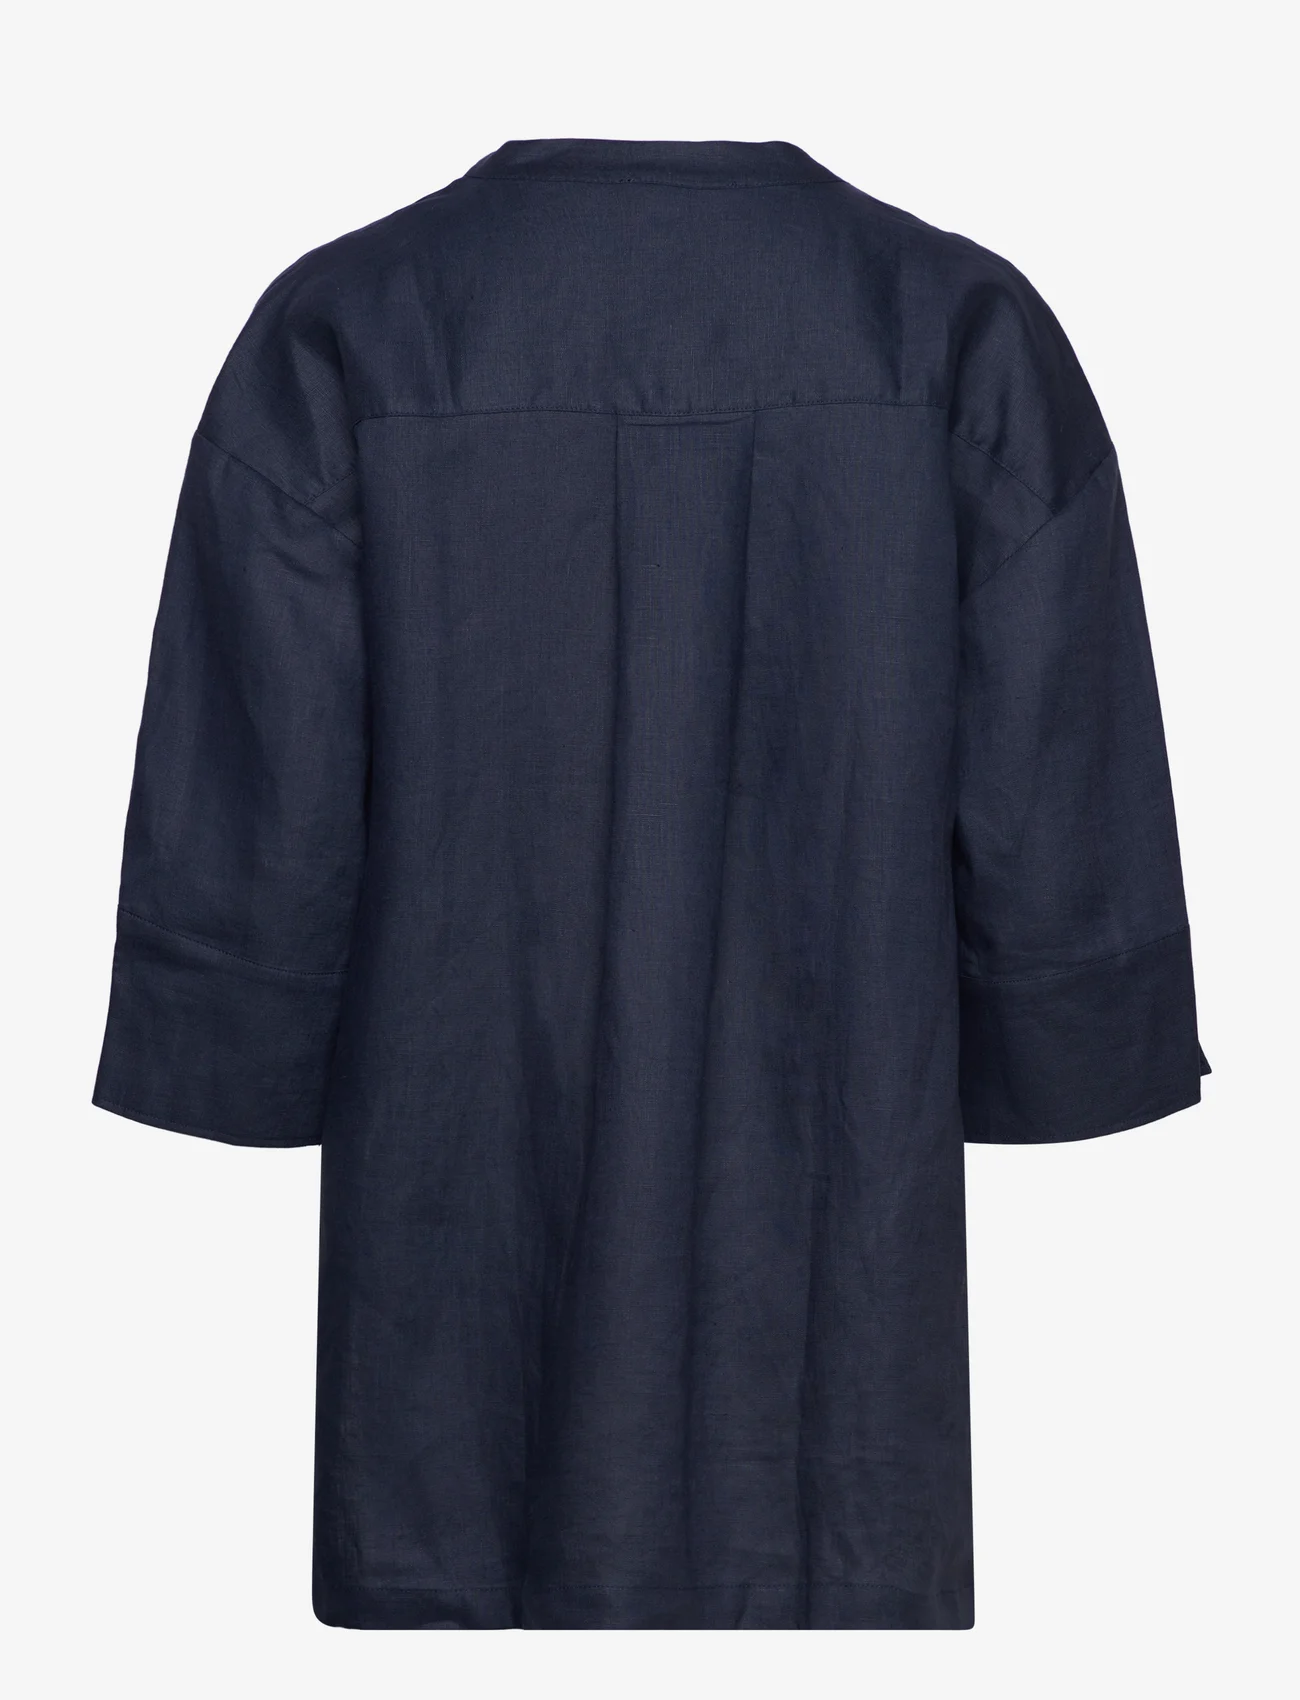 Rosemunde - Linen blouse - hørskjorter - navy - 1